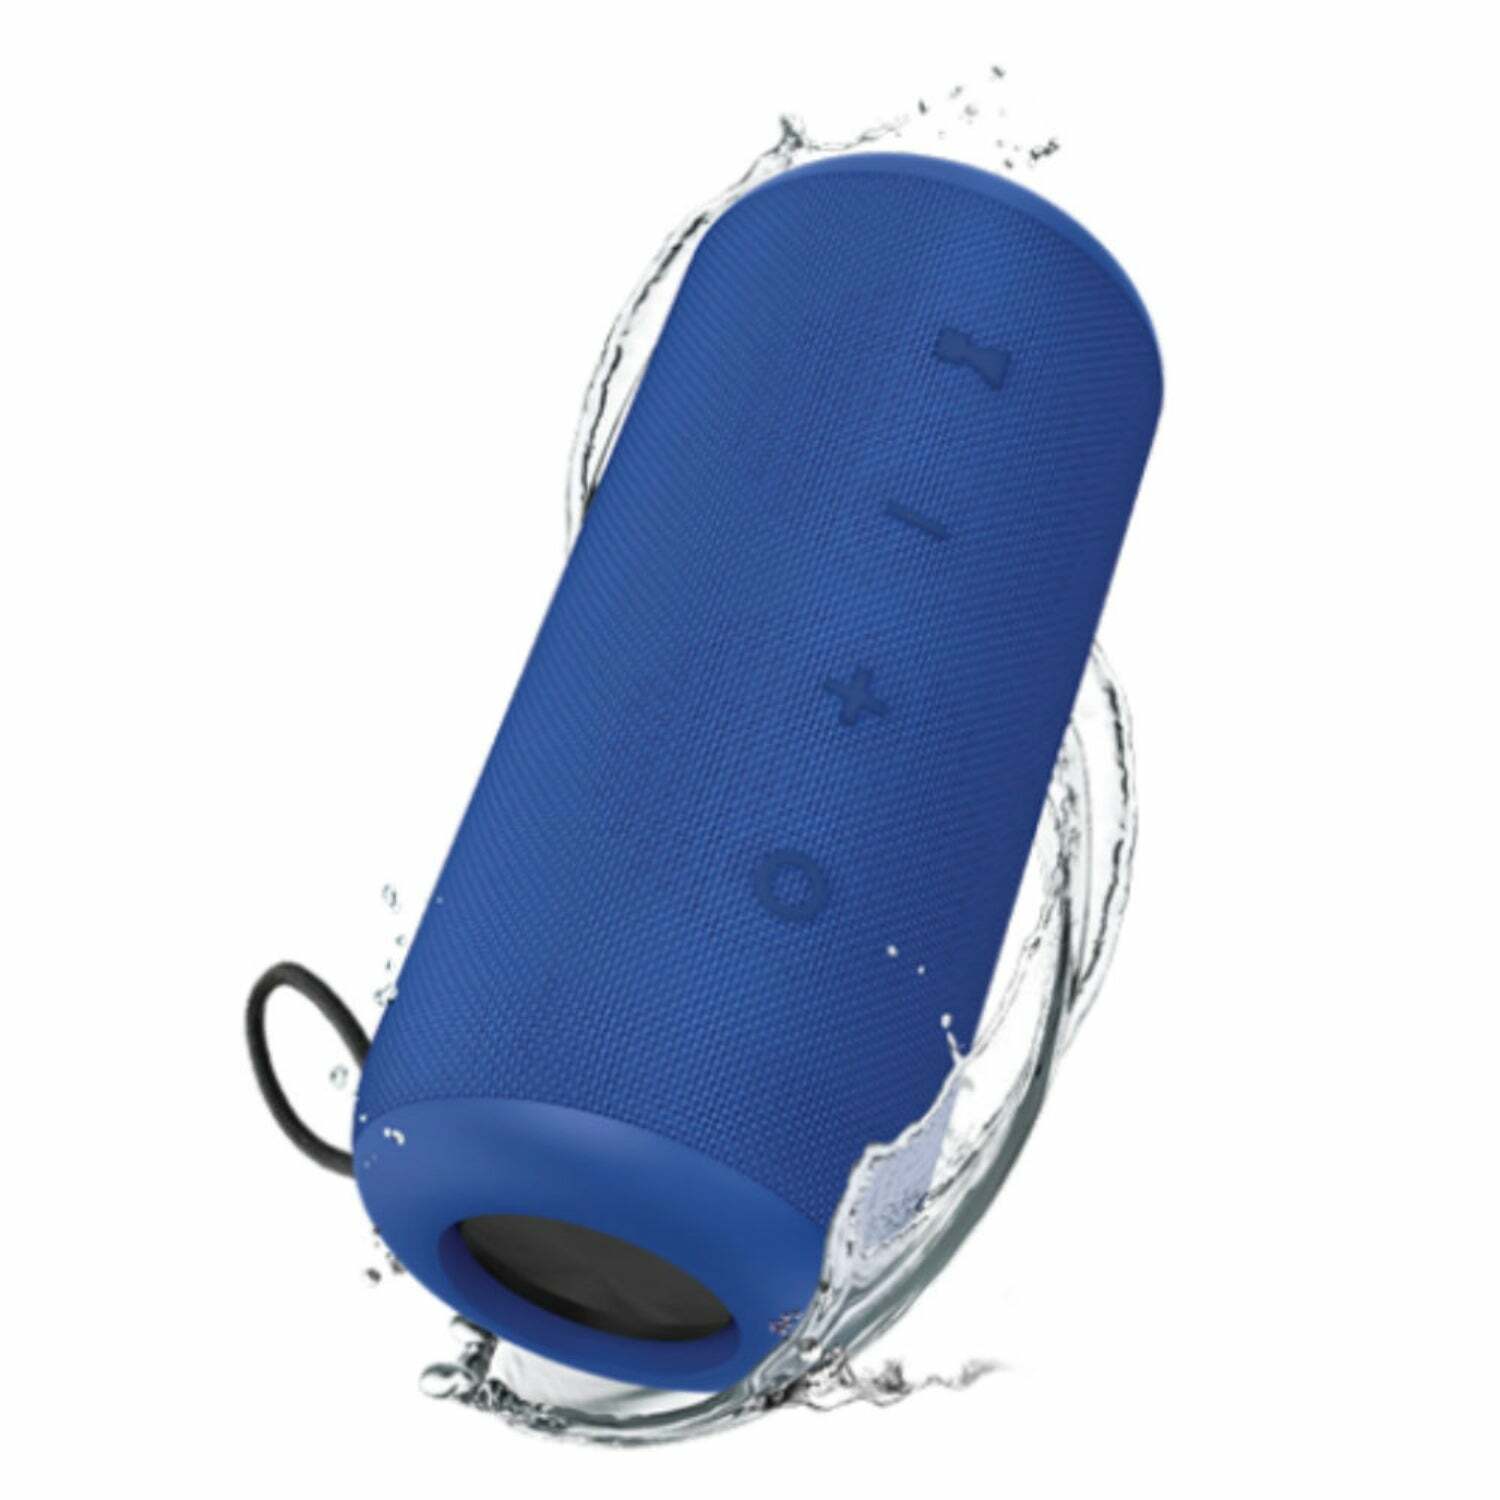 Klip Xtreme TitanPro KBS-300 Waterproof Portable Speaker Bluetooth Wireless - Blue